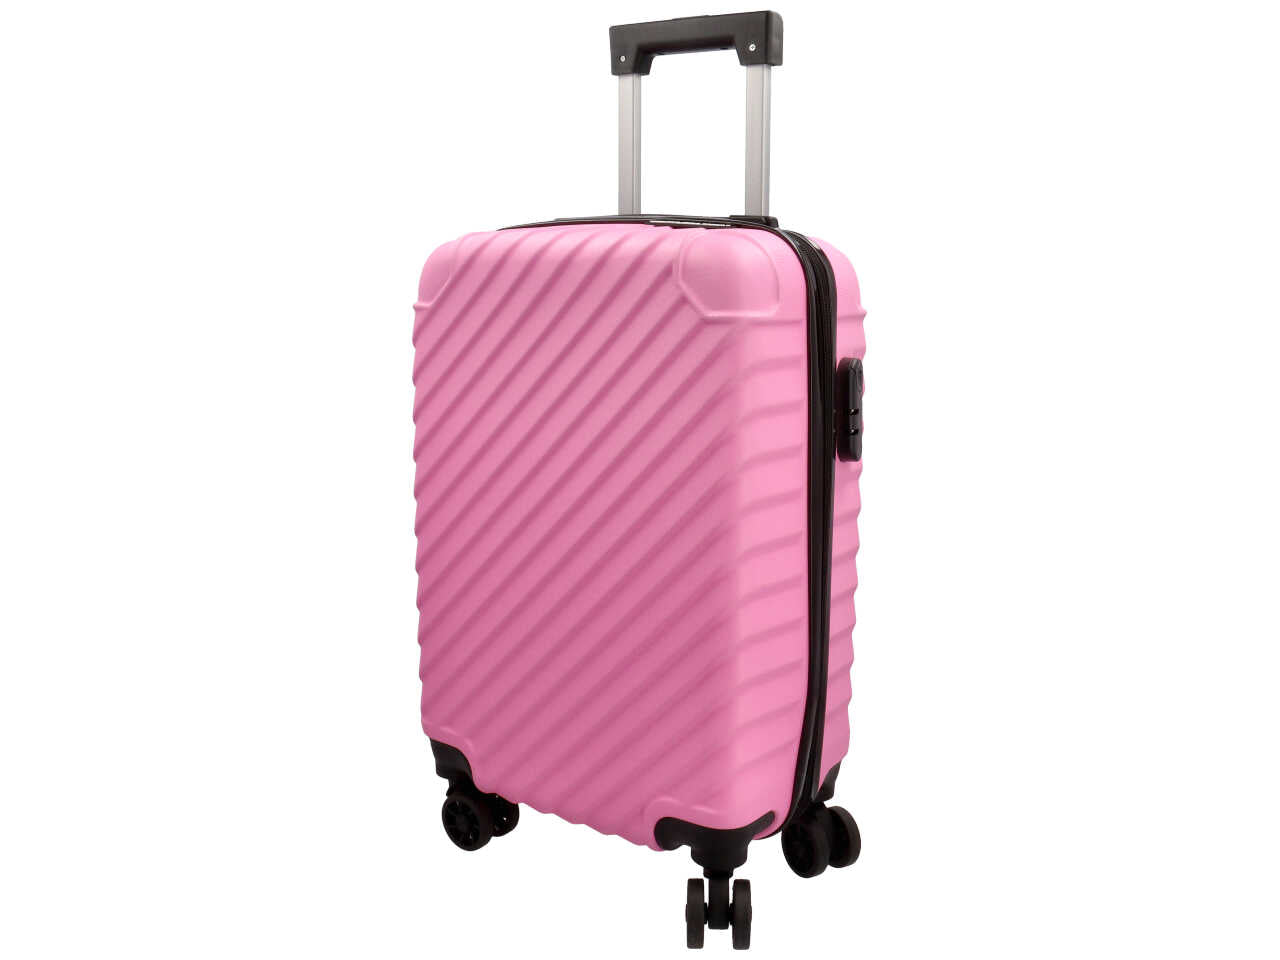 Trolley modello naxos colore rosa misura 33,5x22x55cm in abs con 4 doppie ruote, sacca a rete, elastico ferma indumenti e chiusura con ganci